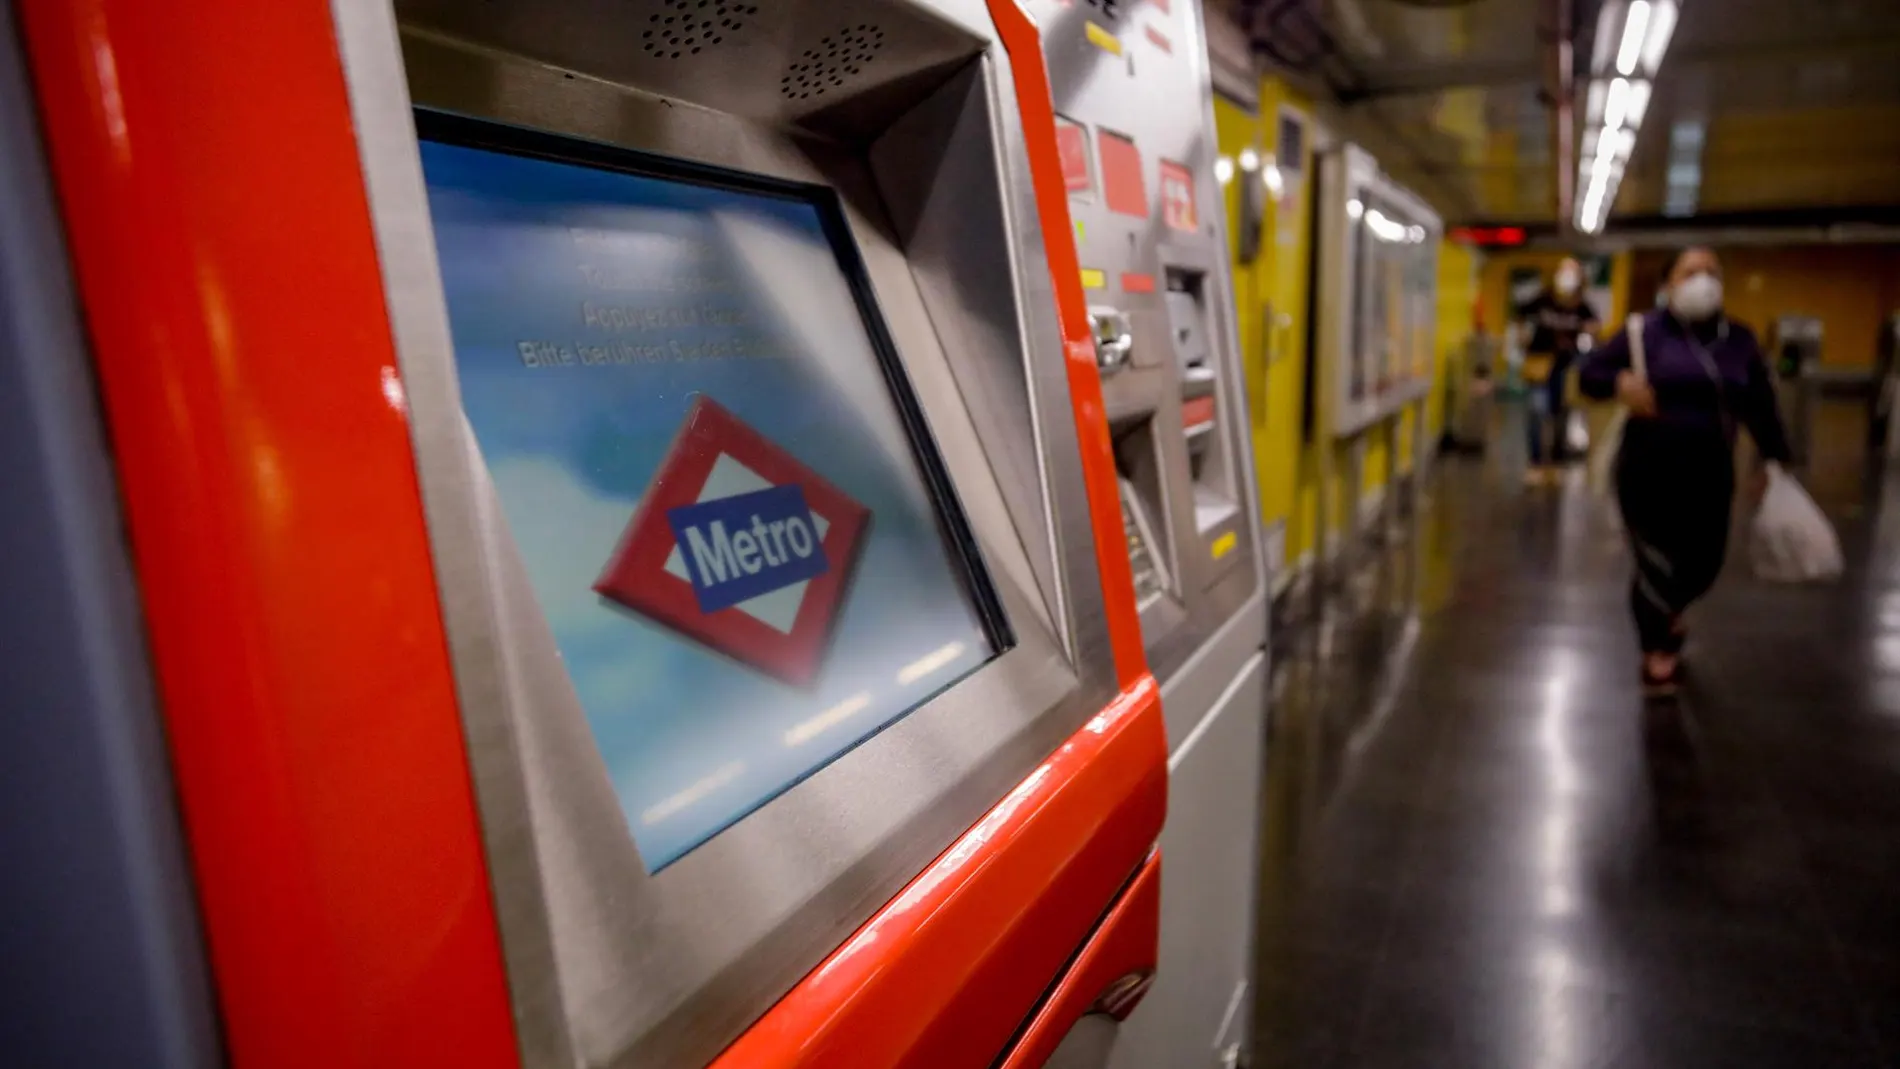 La Comunidad invierte 7,7 millones en renovar con tecnología inteligente las máquinas de billetes de Metro en 19 estaciones